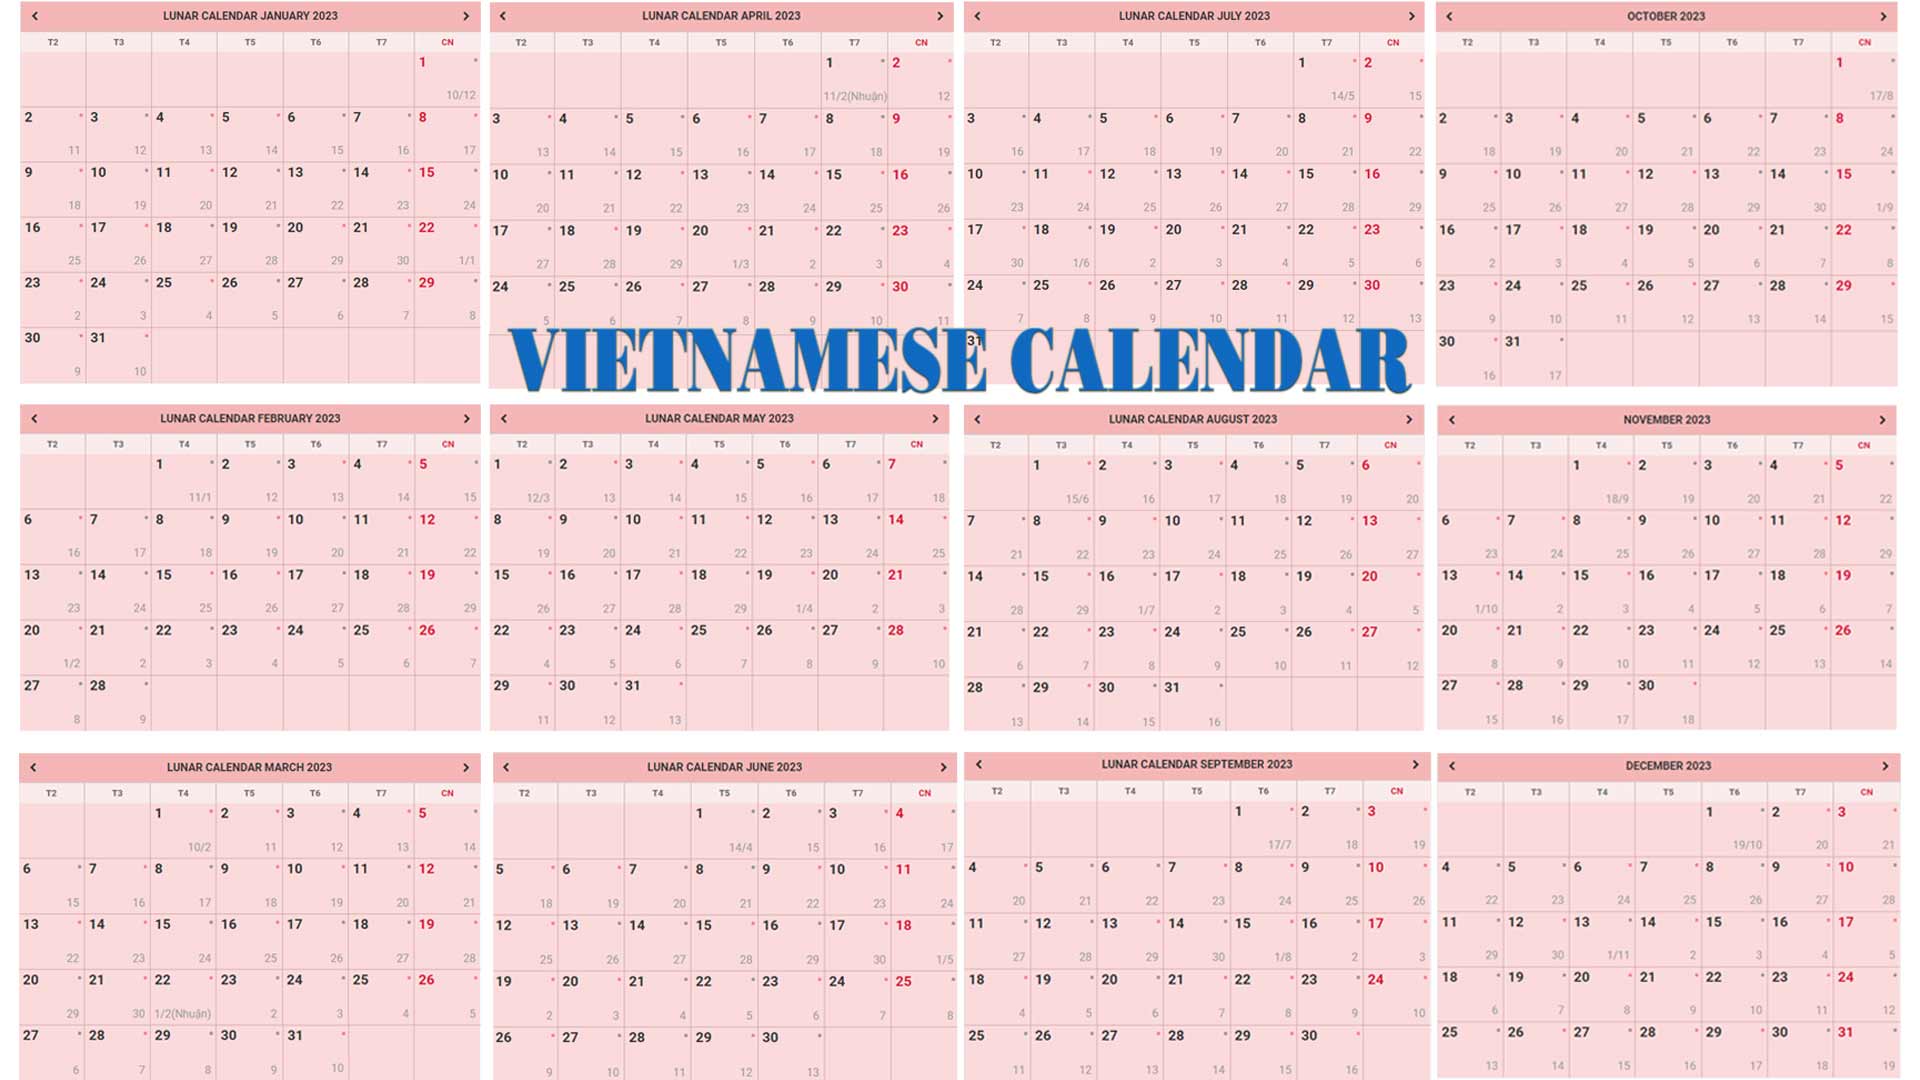 Vietnamese Calendar - Lunar Year, Zodiac Animals, & Festivals